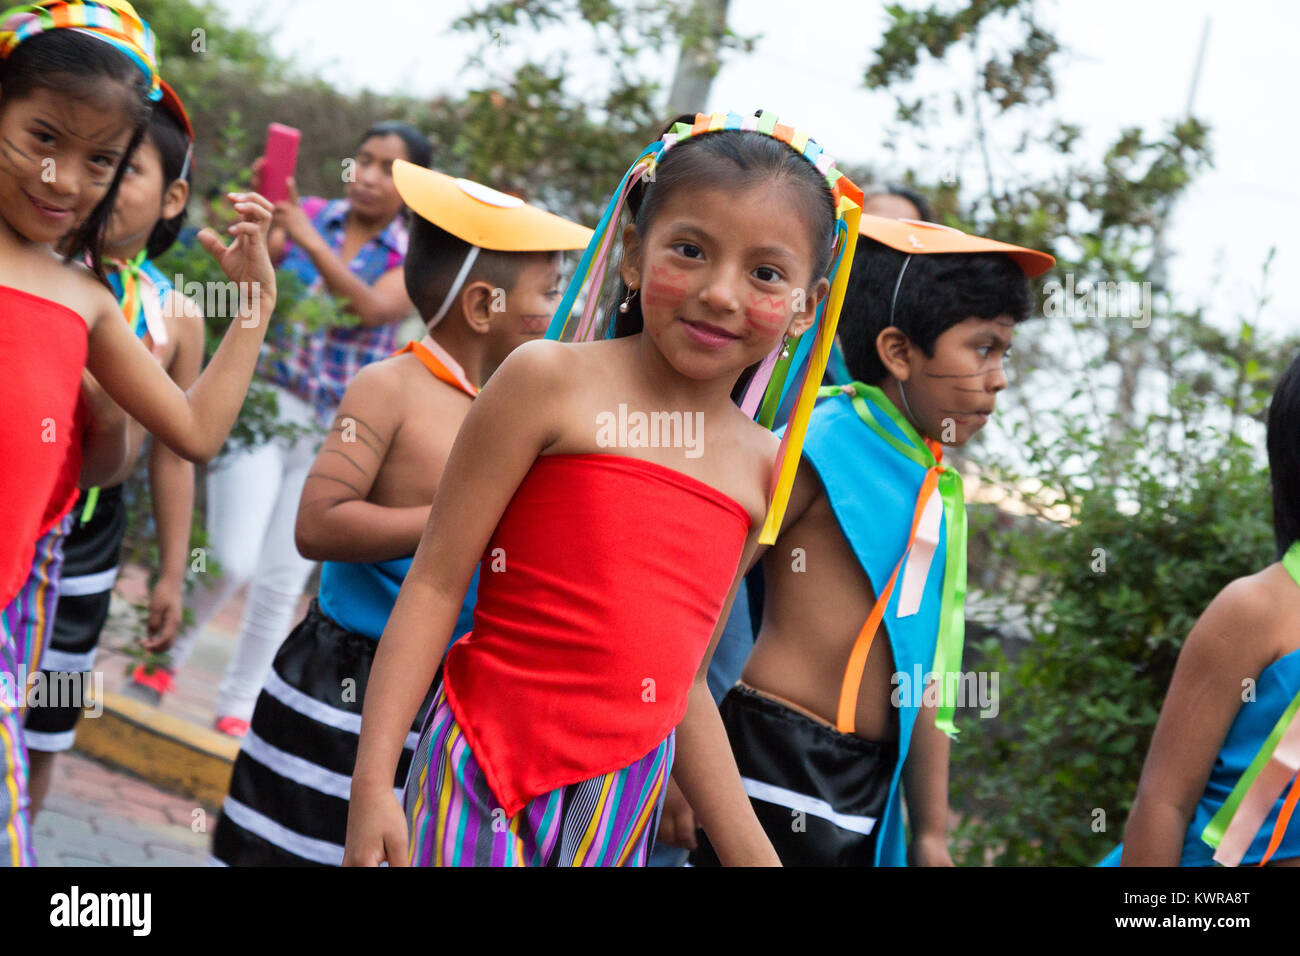 Enfant de la rue; enfants de Galapagos locaux dans une parade de rue, Puerto Ayora, île de Santa Cruz, îles galapagos, Équateur Amérique du Sud Banque D'Images